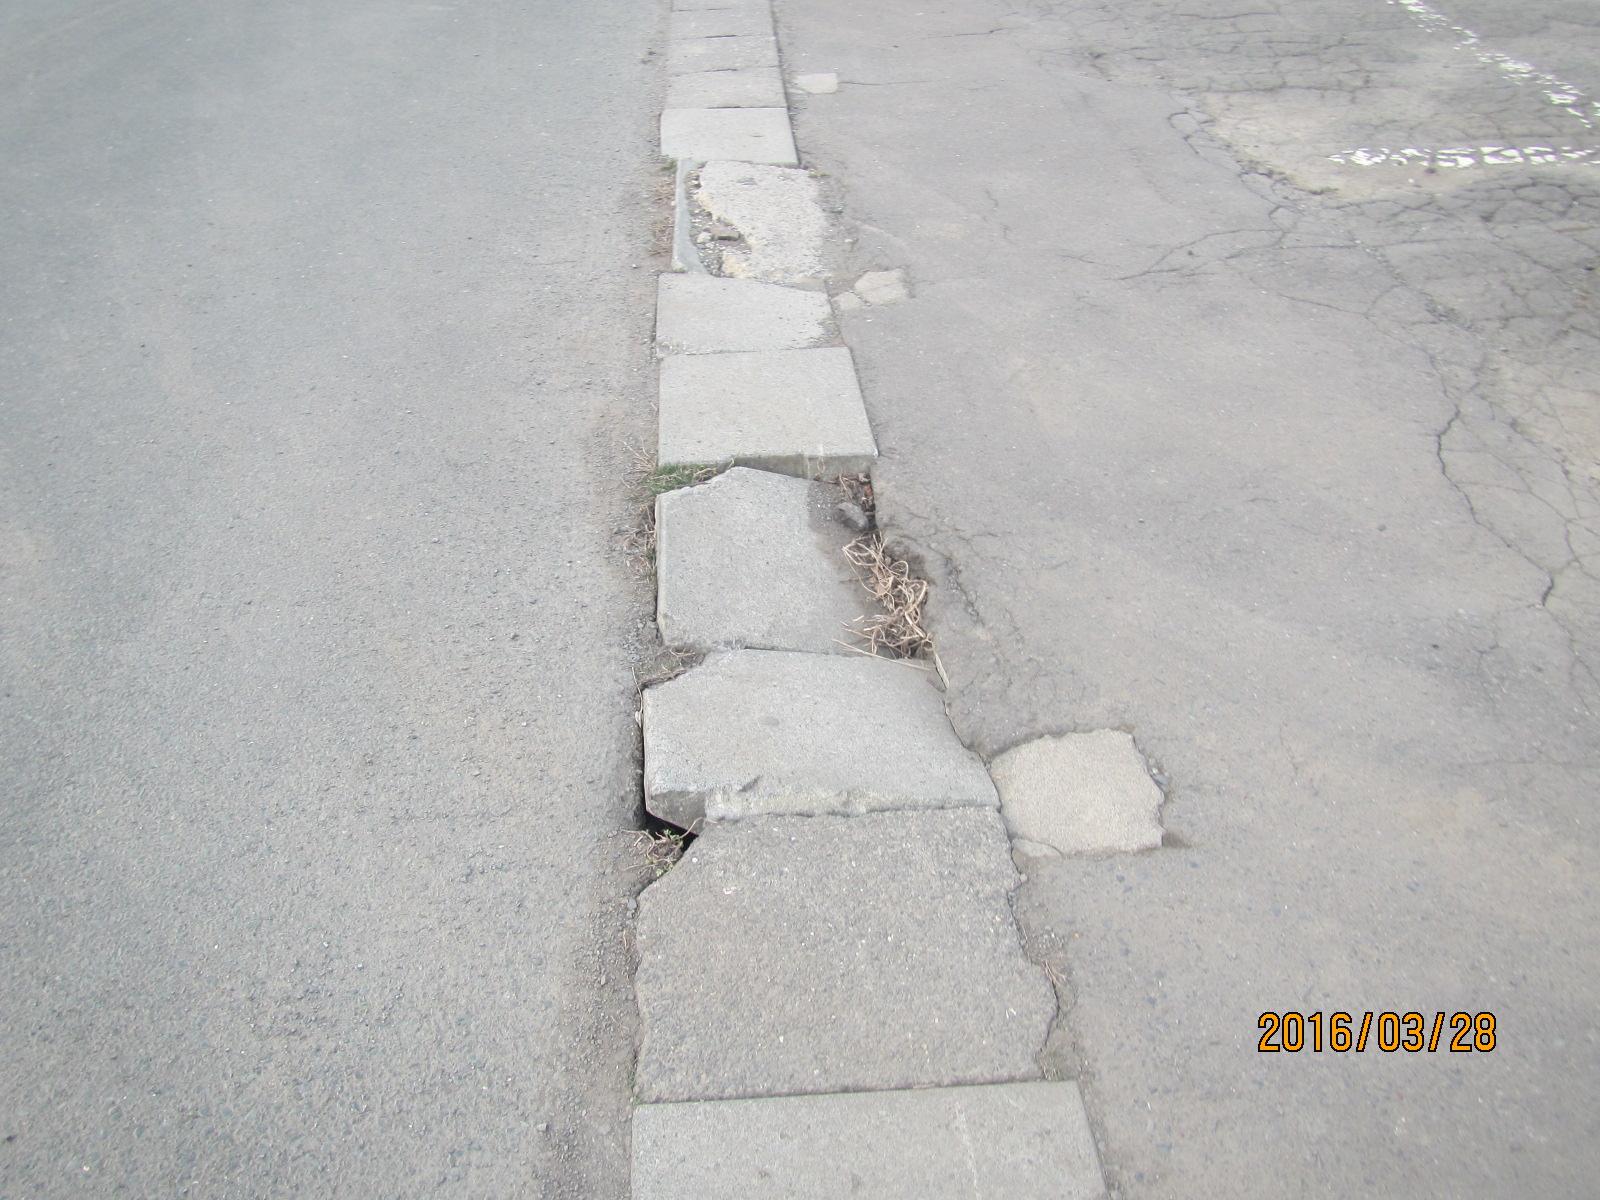 コンクリートが割れてあいた穴や、道路との段差のできている側溝の写真